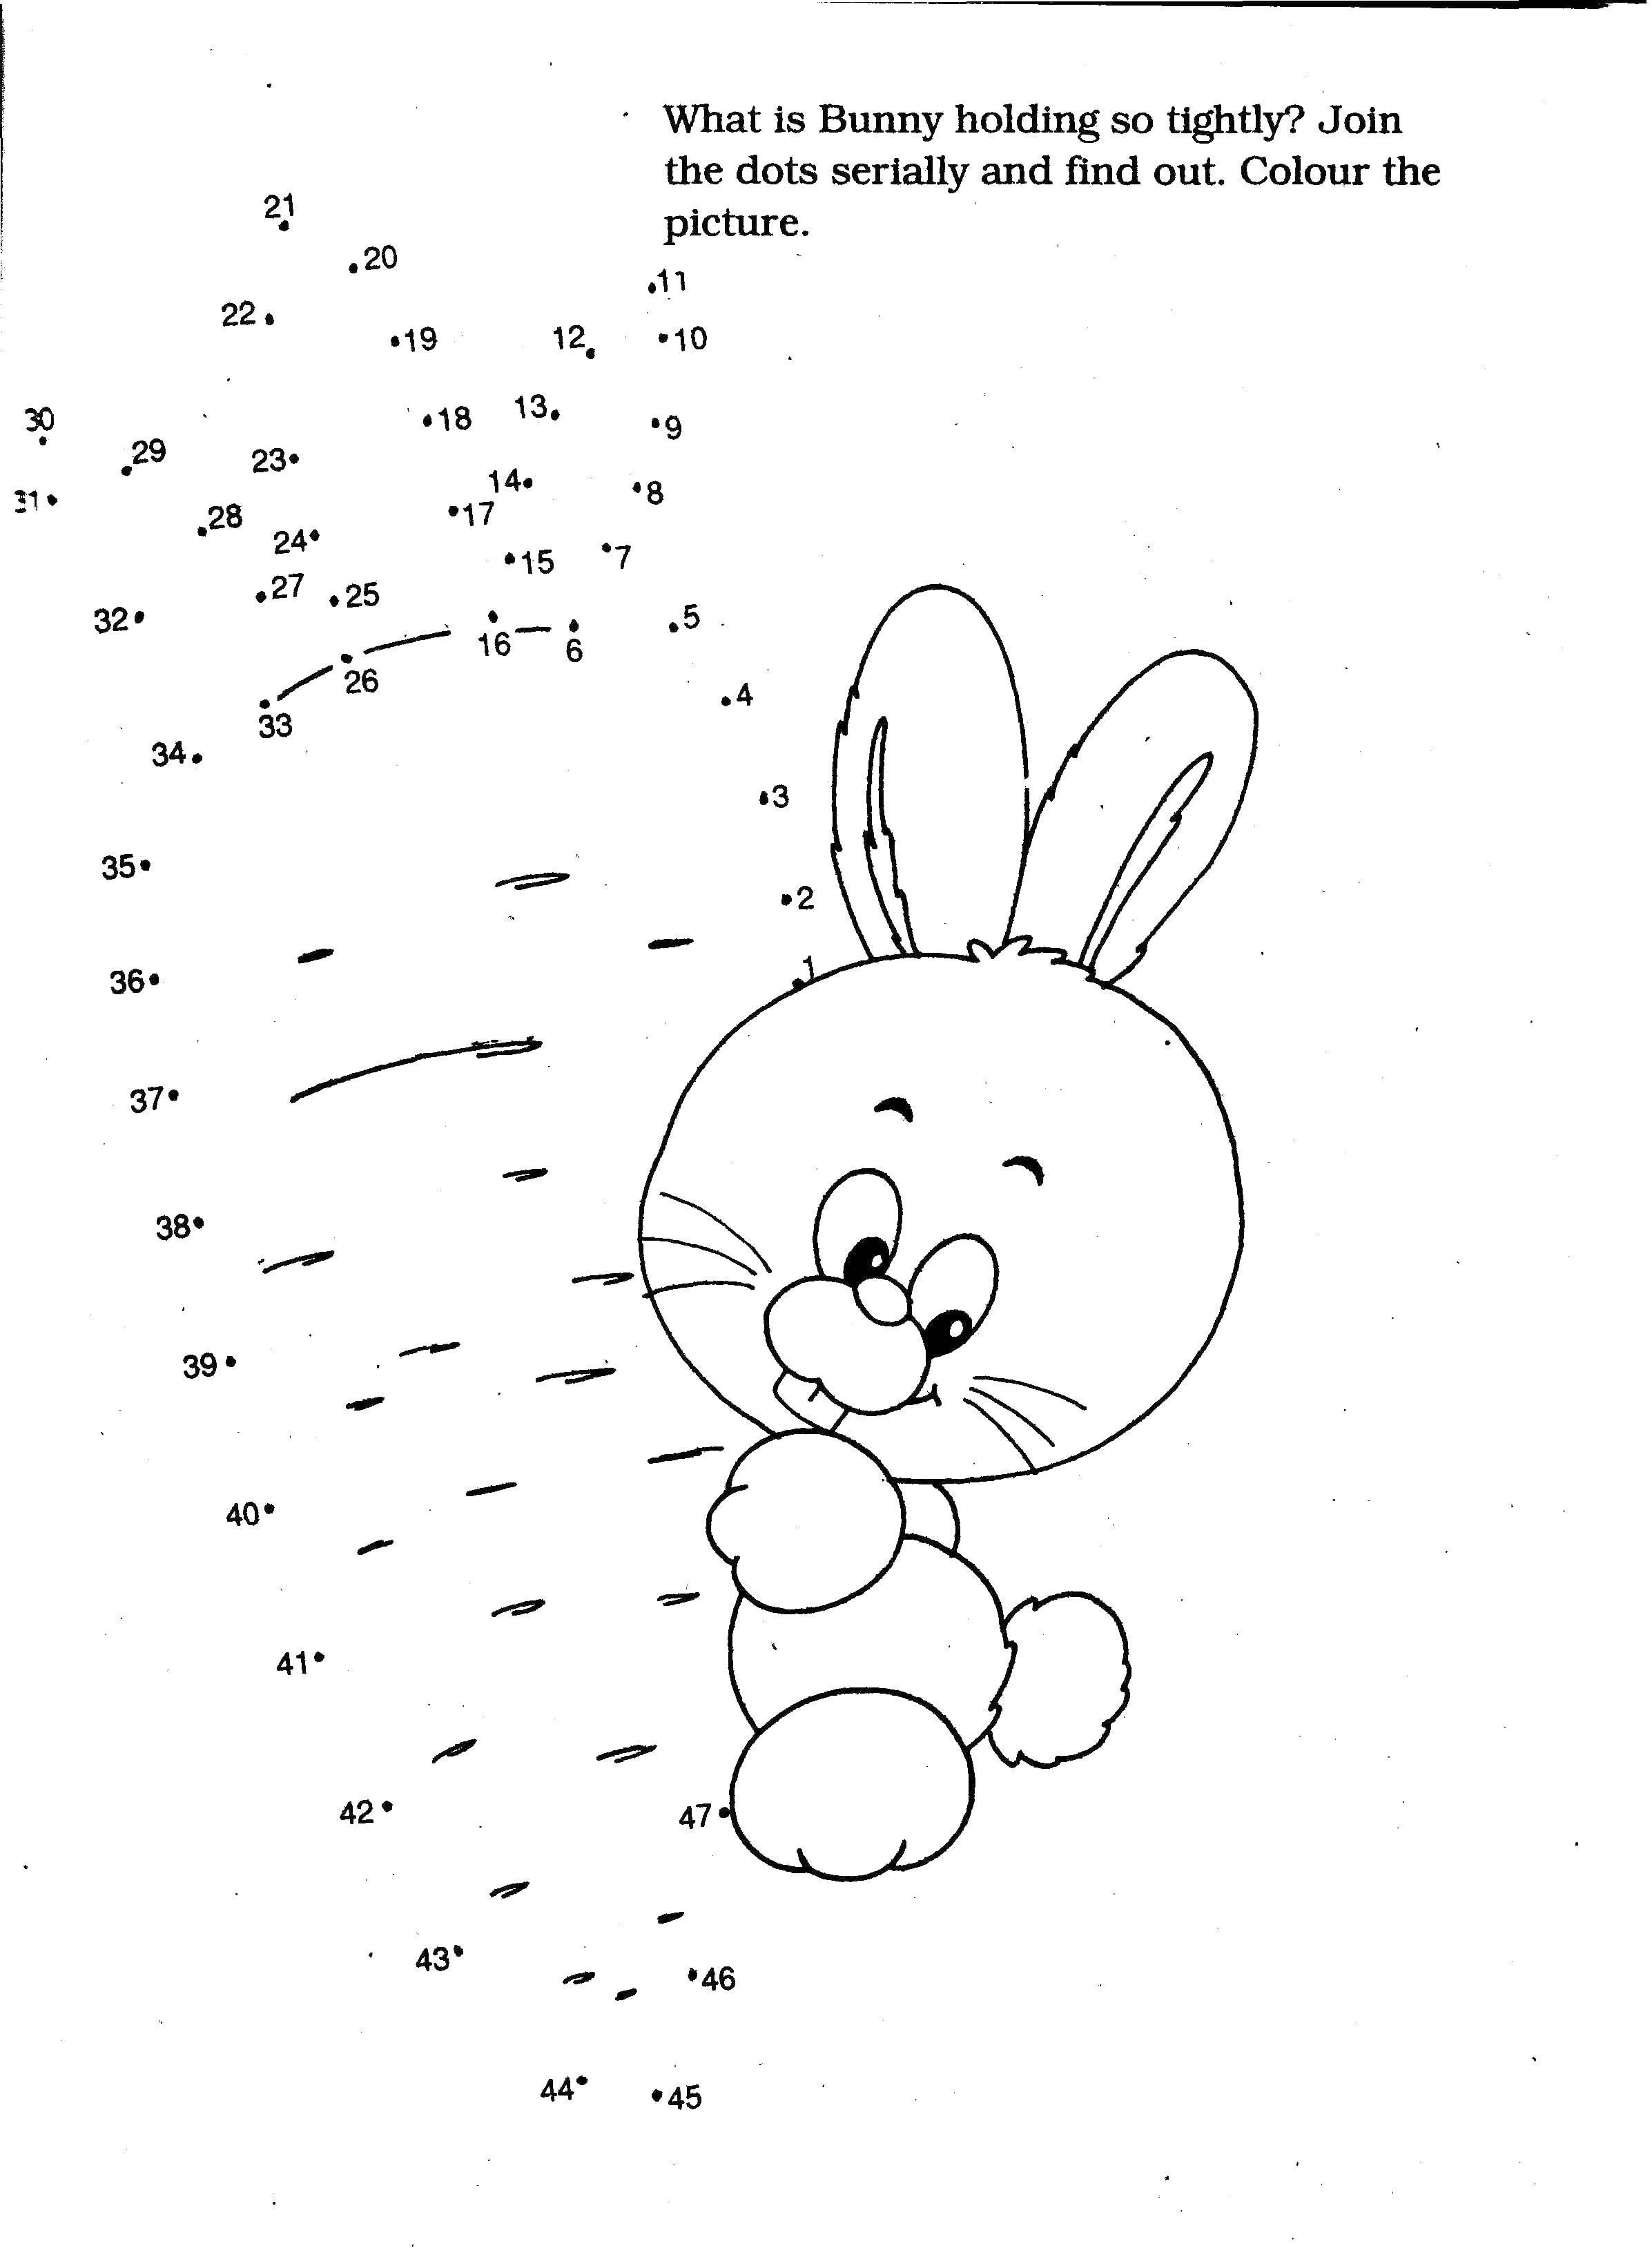 Опис: розмальовки  Заєць з морквою. Категорія: домалюй по точках. Теги:  домалюй, точки, кролик.